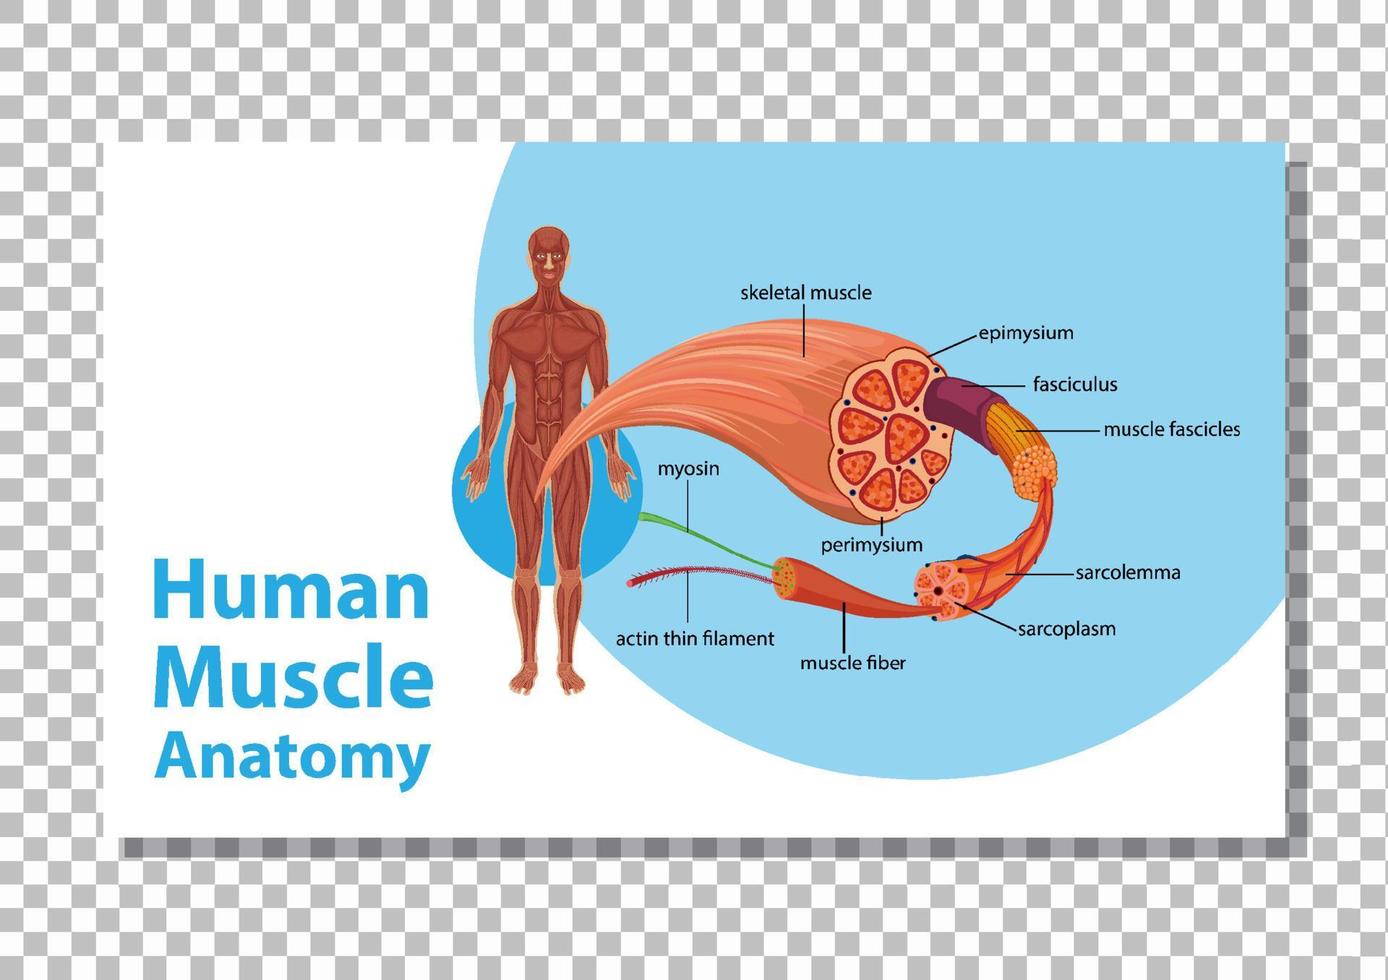 anatomía del músculo humano con anatomía del cuerpo vector